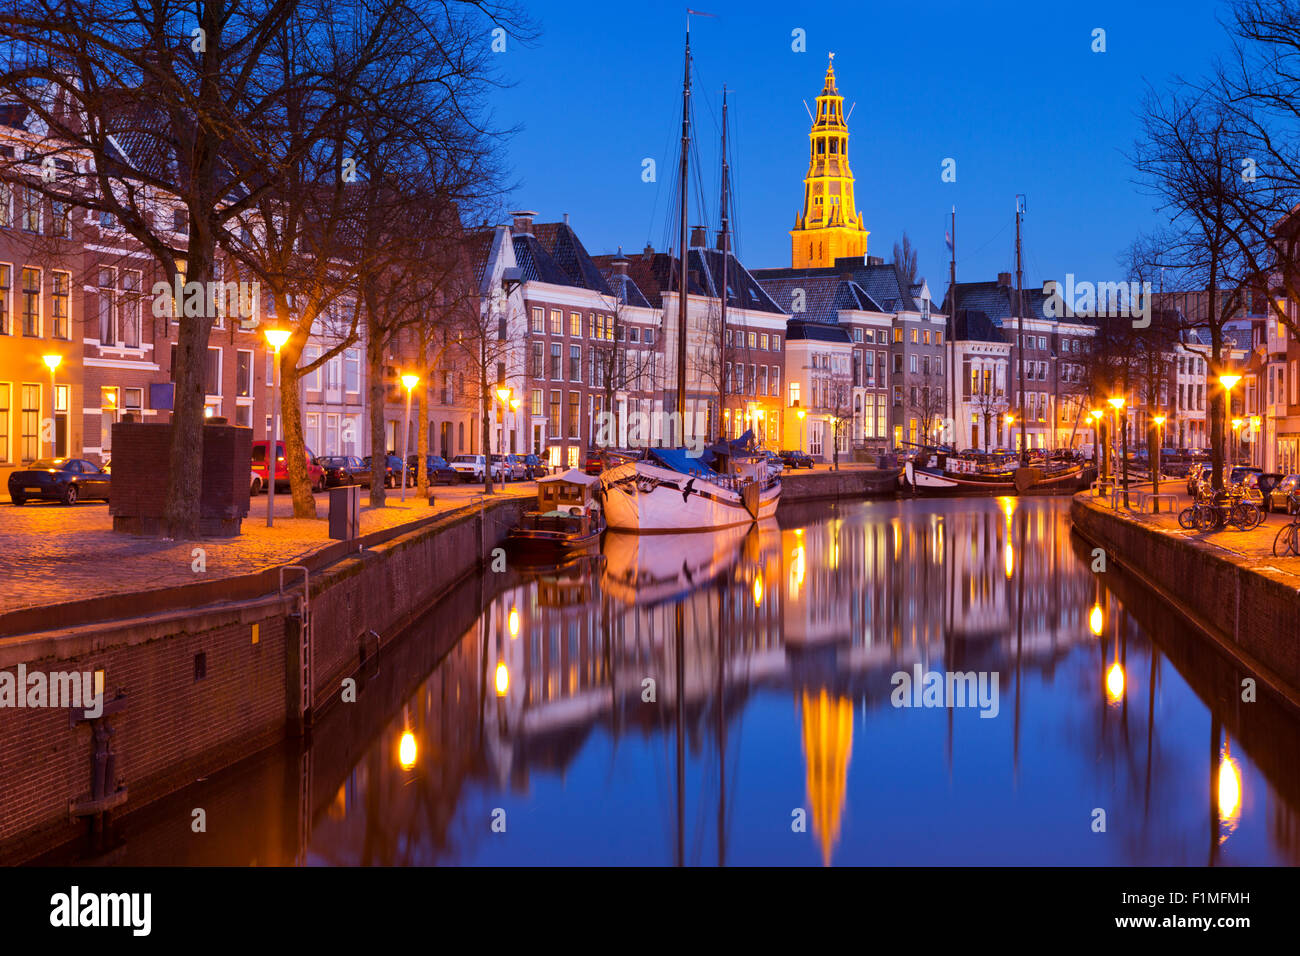 La ciudad de Groningen, en el norte de los Países Bajos, fotografiada por la noche. Foto de stock